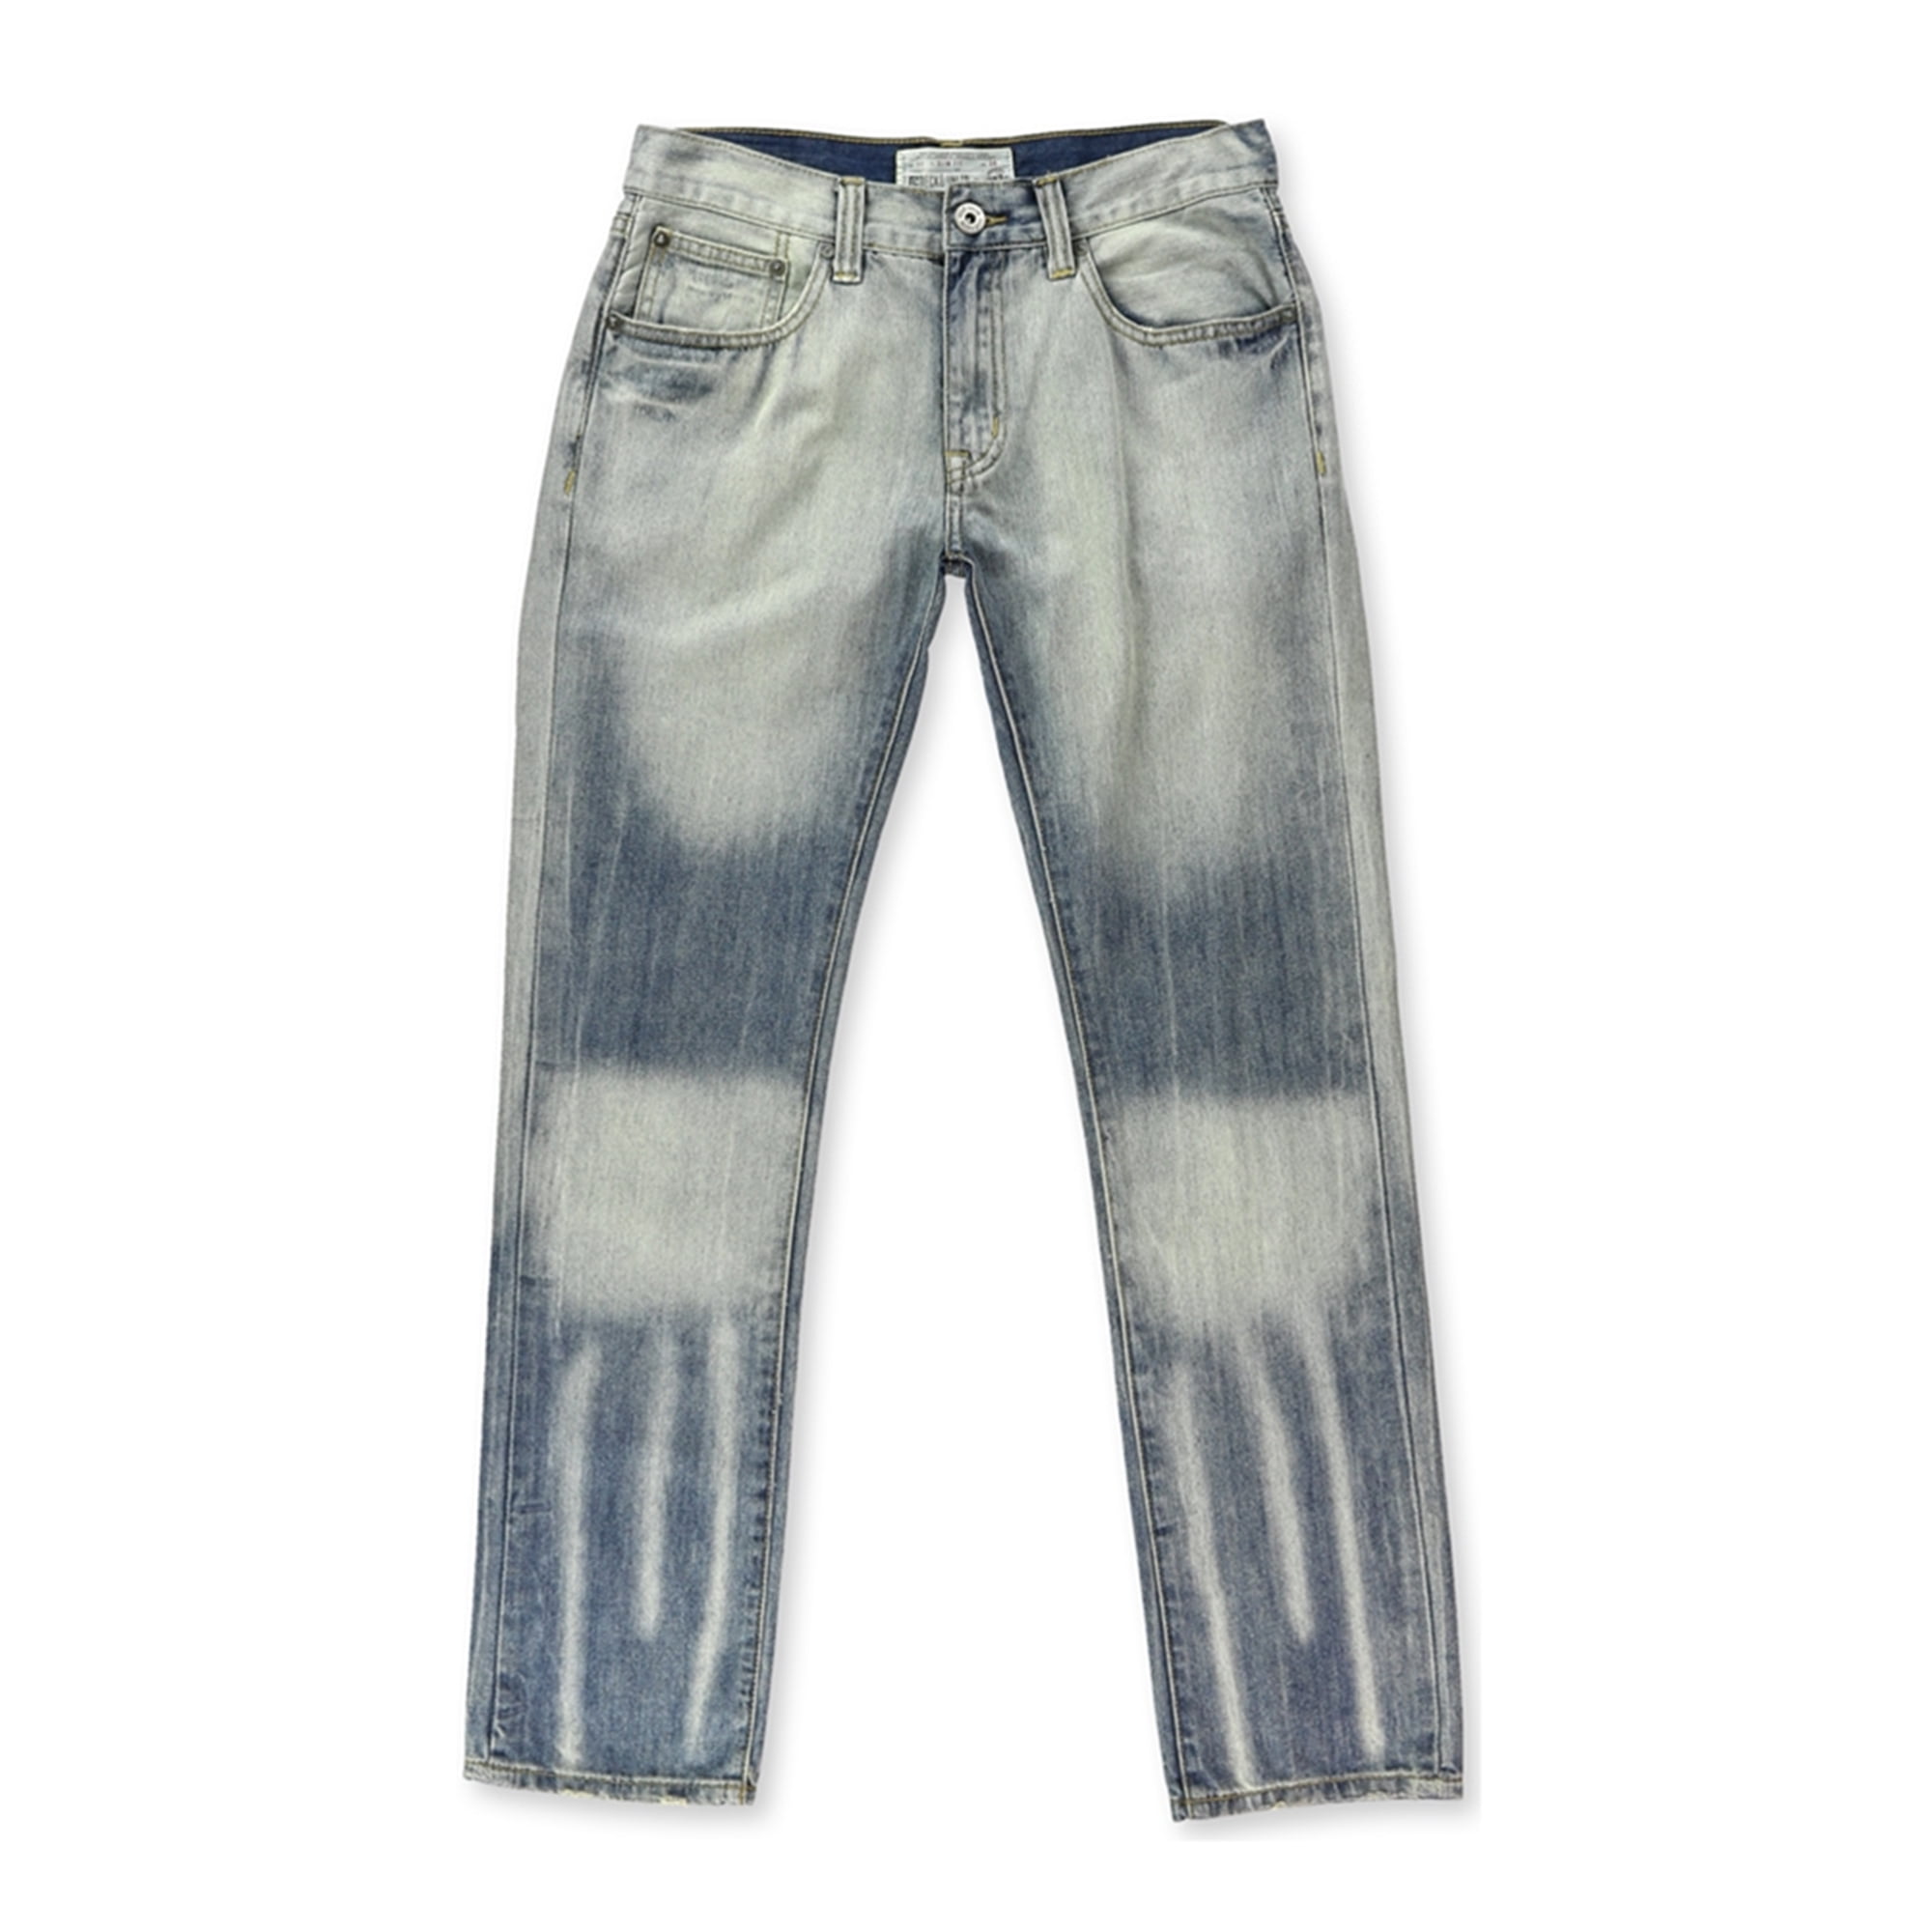 Ecko Unltd Mens 710 Skinny Fit Denim Jeans Choose Size and Color 